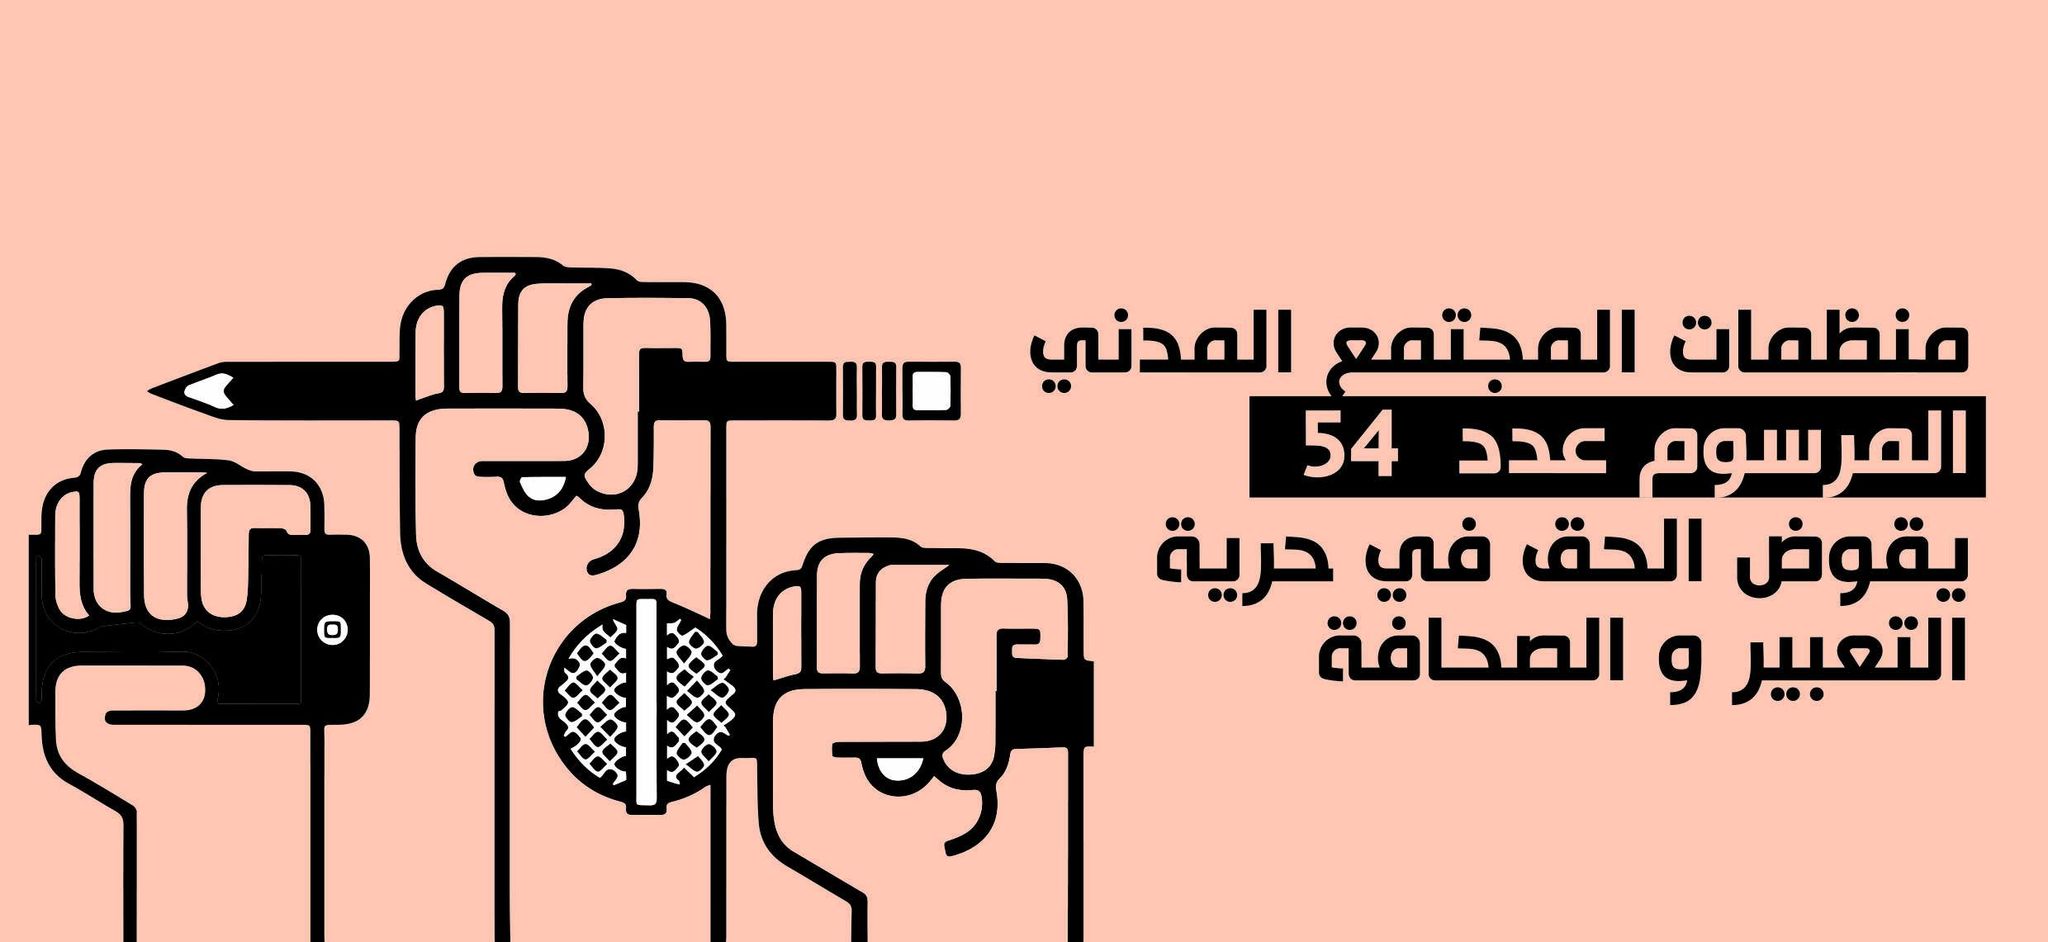 منظمات المجتمع المدني : المرسوم عدد  54 يقوض الحق في حرية التعبير و الصحافة